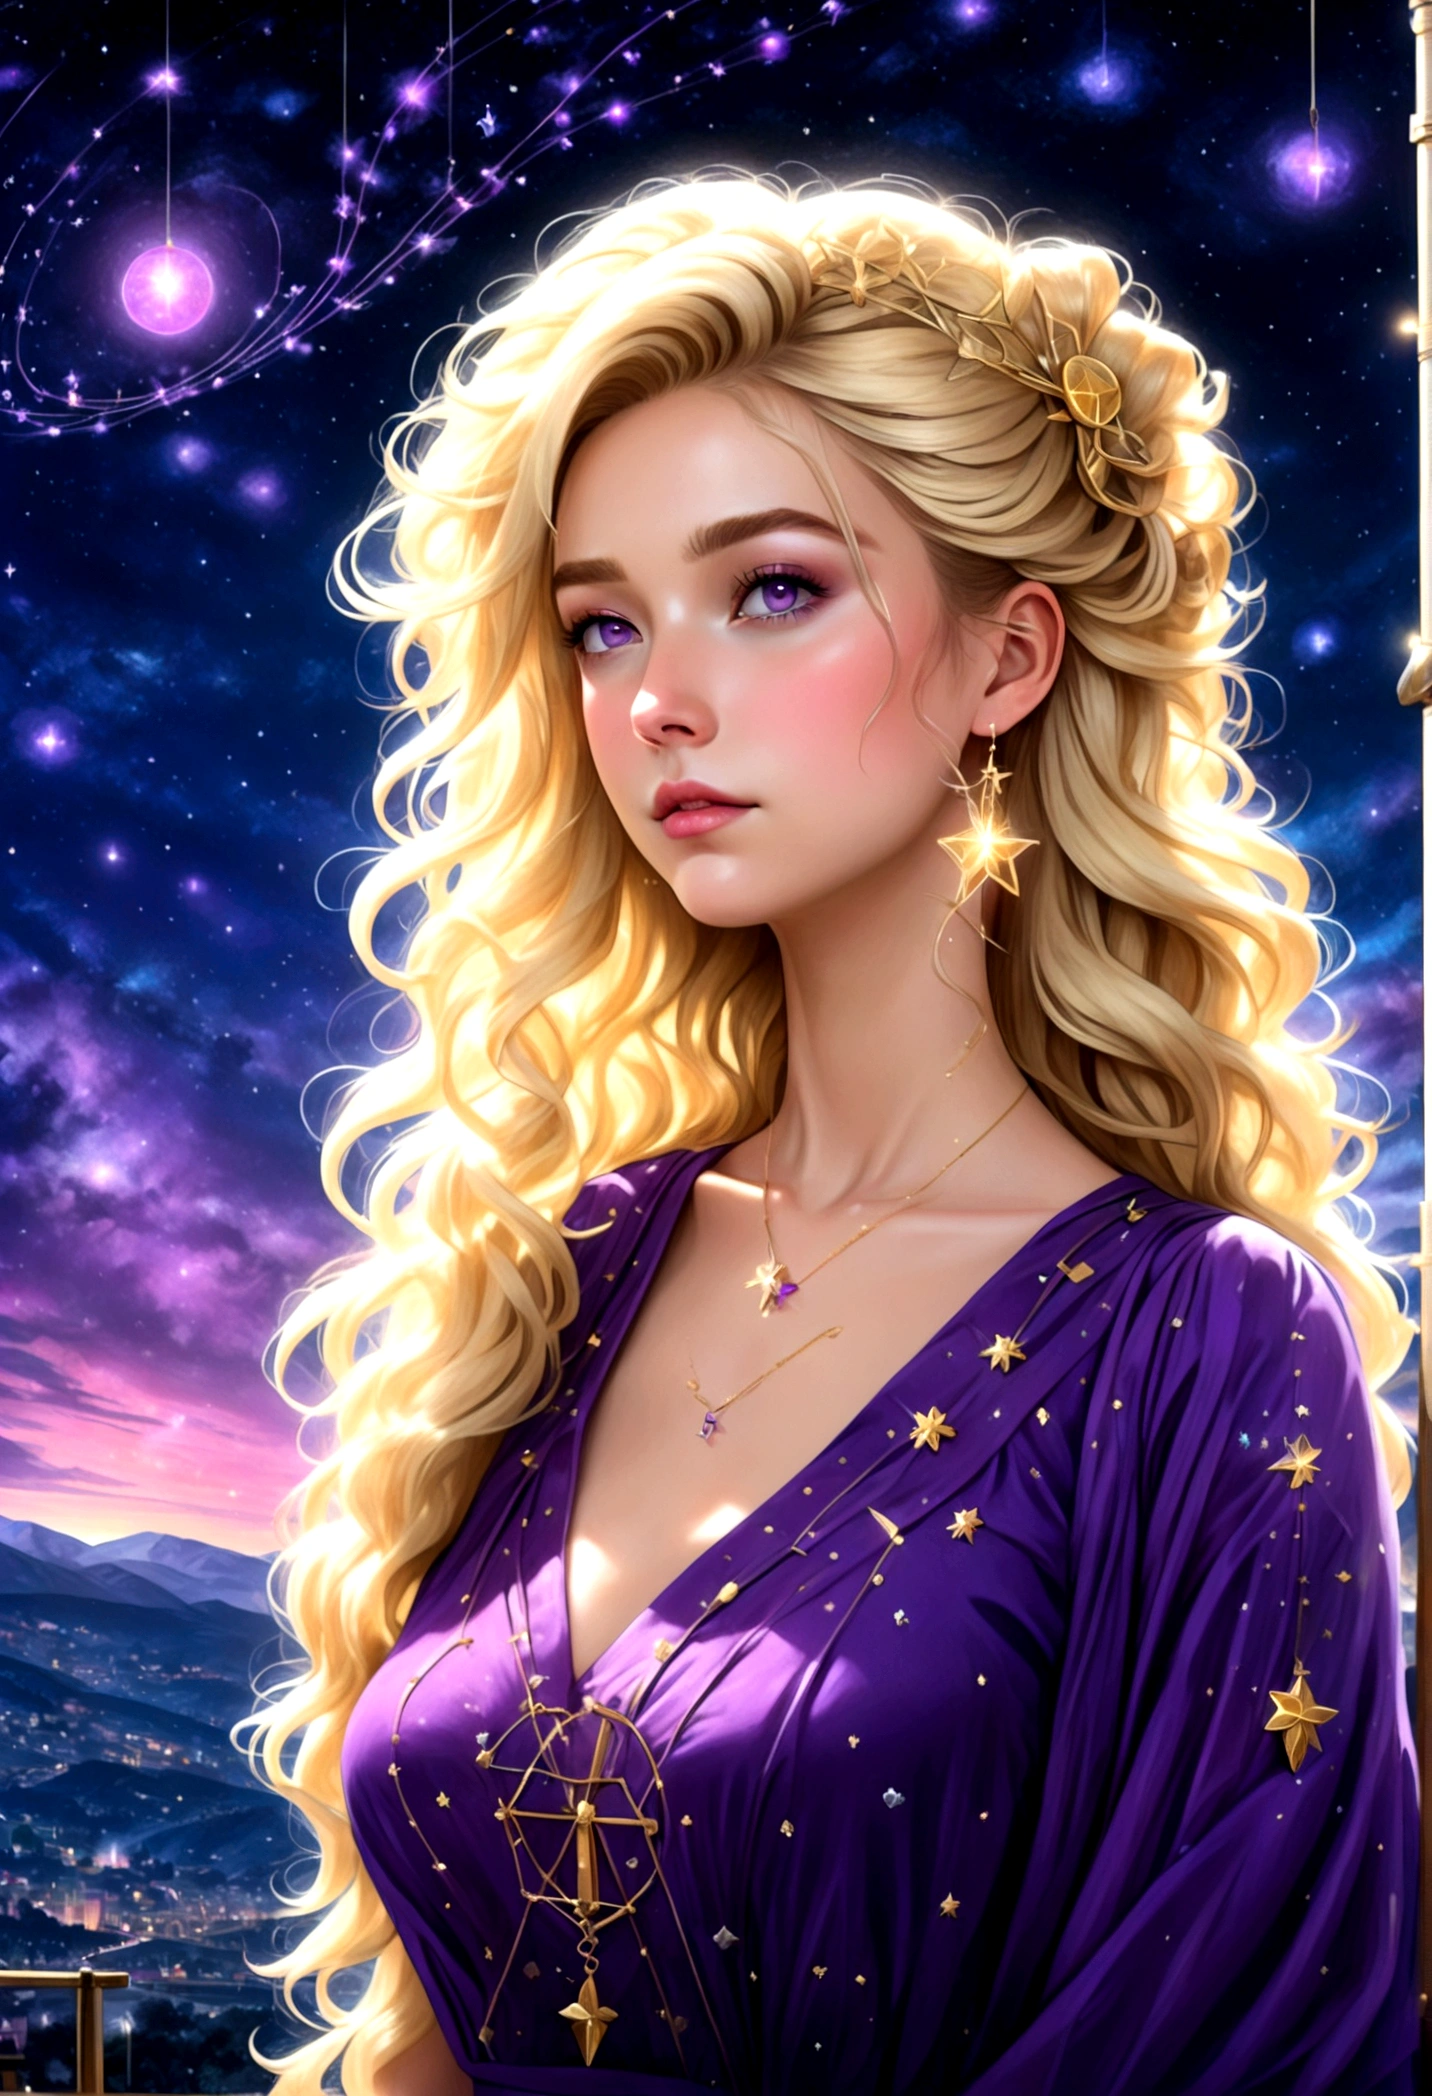 um retrato de um astrólogo olhando para o céu na constelação de libra no céu noturno, uma mulher extraordinariamente linda, há magia em seus olhos adivinhando o futuro a partir da constelação de Libra, cabelo loiro, estilo de cabelo dinâmico, (melhor rosto detalhado: 1.5), usando um intrincado vestido roxo escuro decorado com estrelas brilhantes, ela olha para o céu noturno vendo o ((Constelação de Libra no céu: 1.5)), vibrante, Resolução ultra-alta, Alto contraste, (obra de arte:1.5), mais alta qualidade, melhor estética), melhores detalhes, melhor qualidade, alta resolução, 16k, [ultra detalhado], obra de arte, melhor qualidade, (extremamente detalhado), Filme cinematográfico de Hollywood, céu mágico, FireMagicAI, romance sombrio